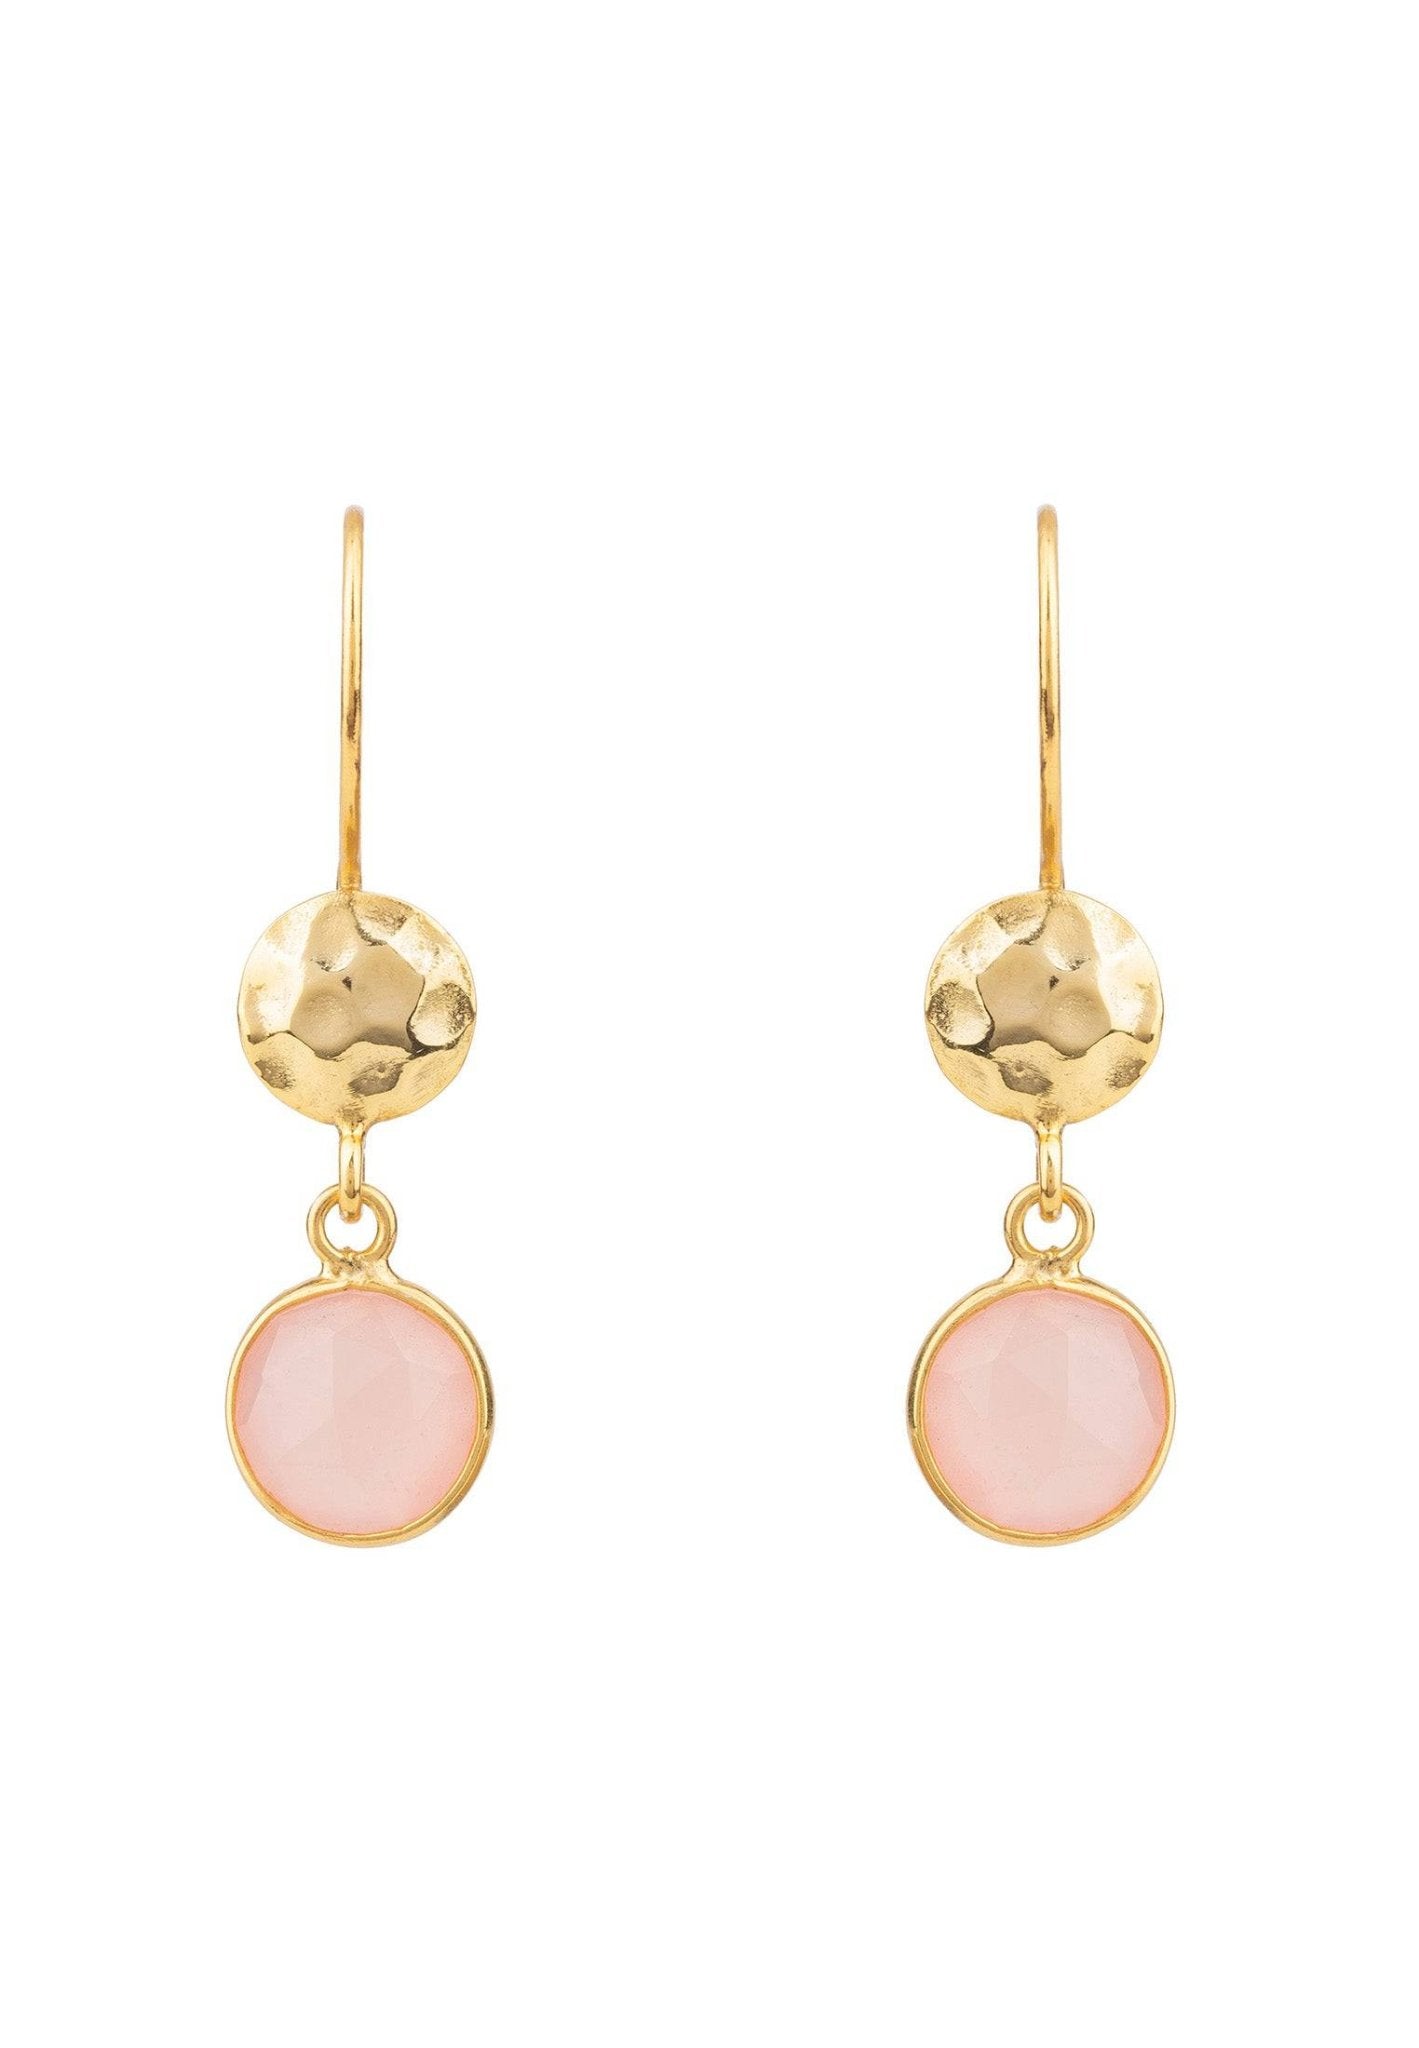 Circle & Hammer Drop Earrings Gold Rose Quartz - LATELITA Earrings